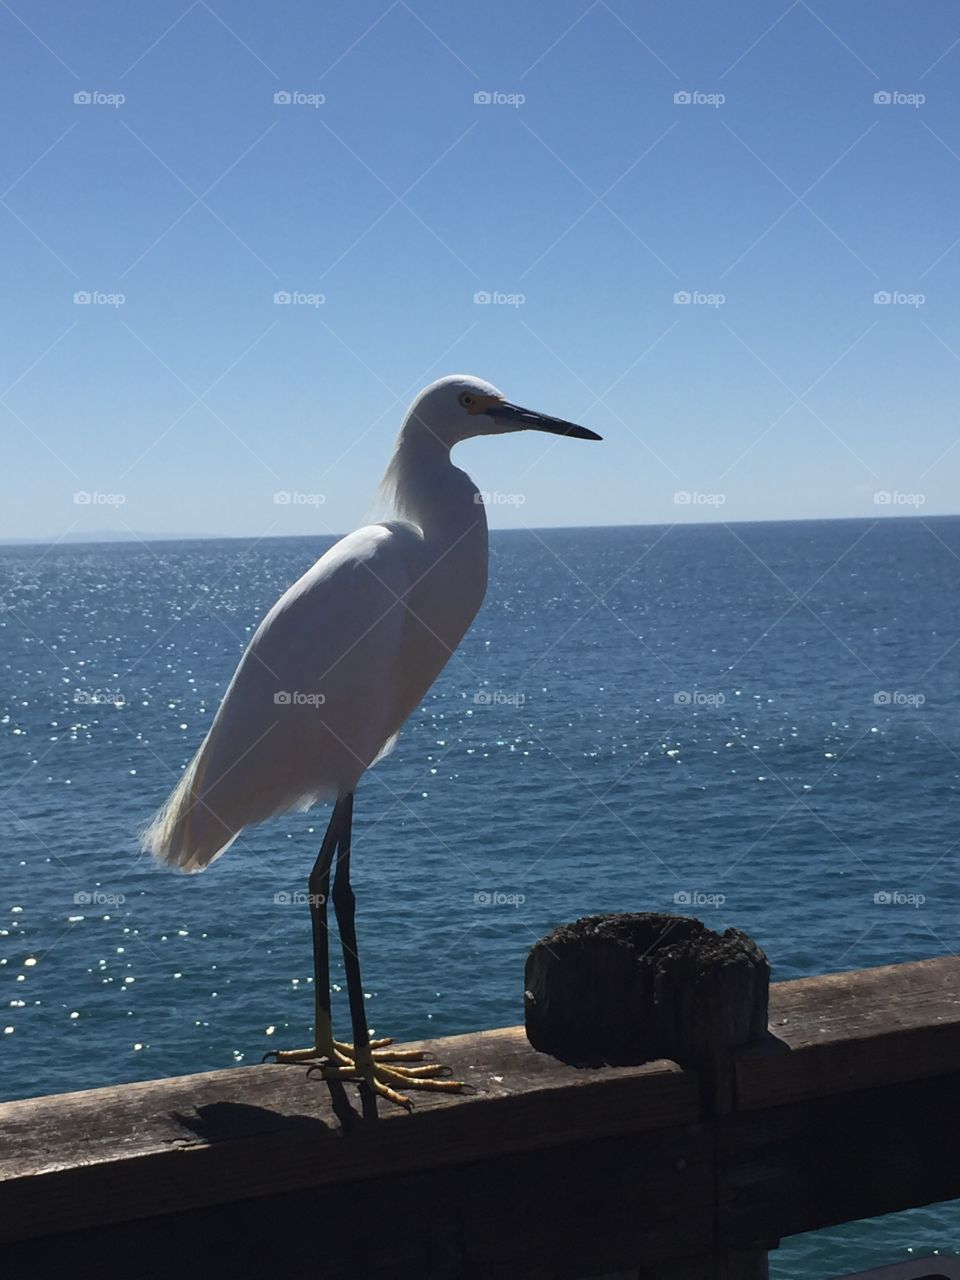 Bird on the pier